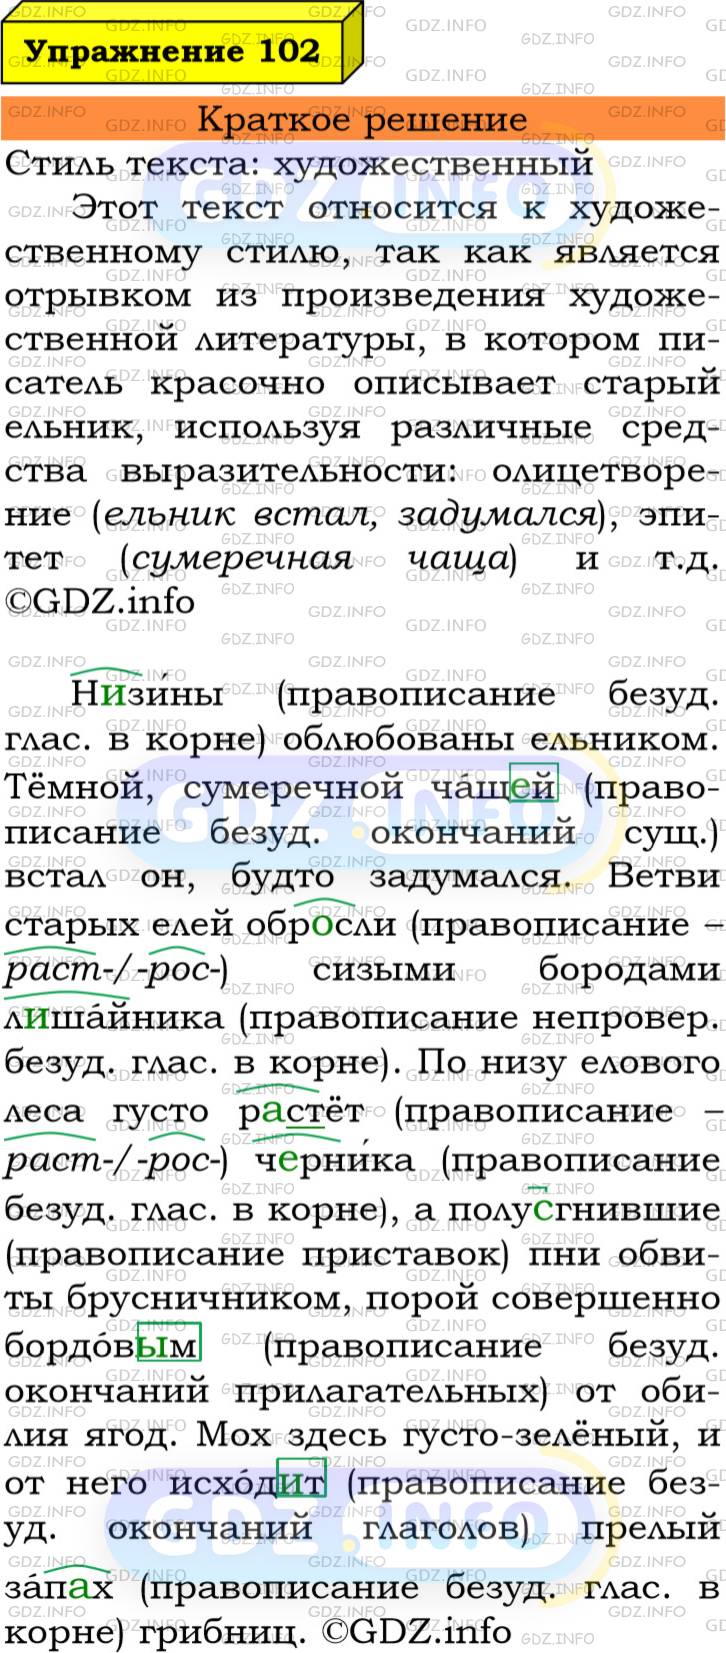 Фото решения 3: Номер №102 из ГДЗ по Русскому языку 6 класс: Ладыженская Т.А. 2019г.